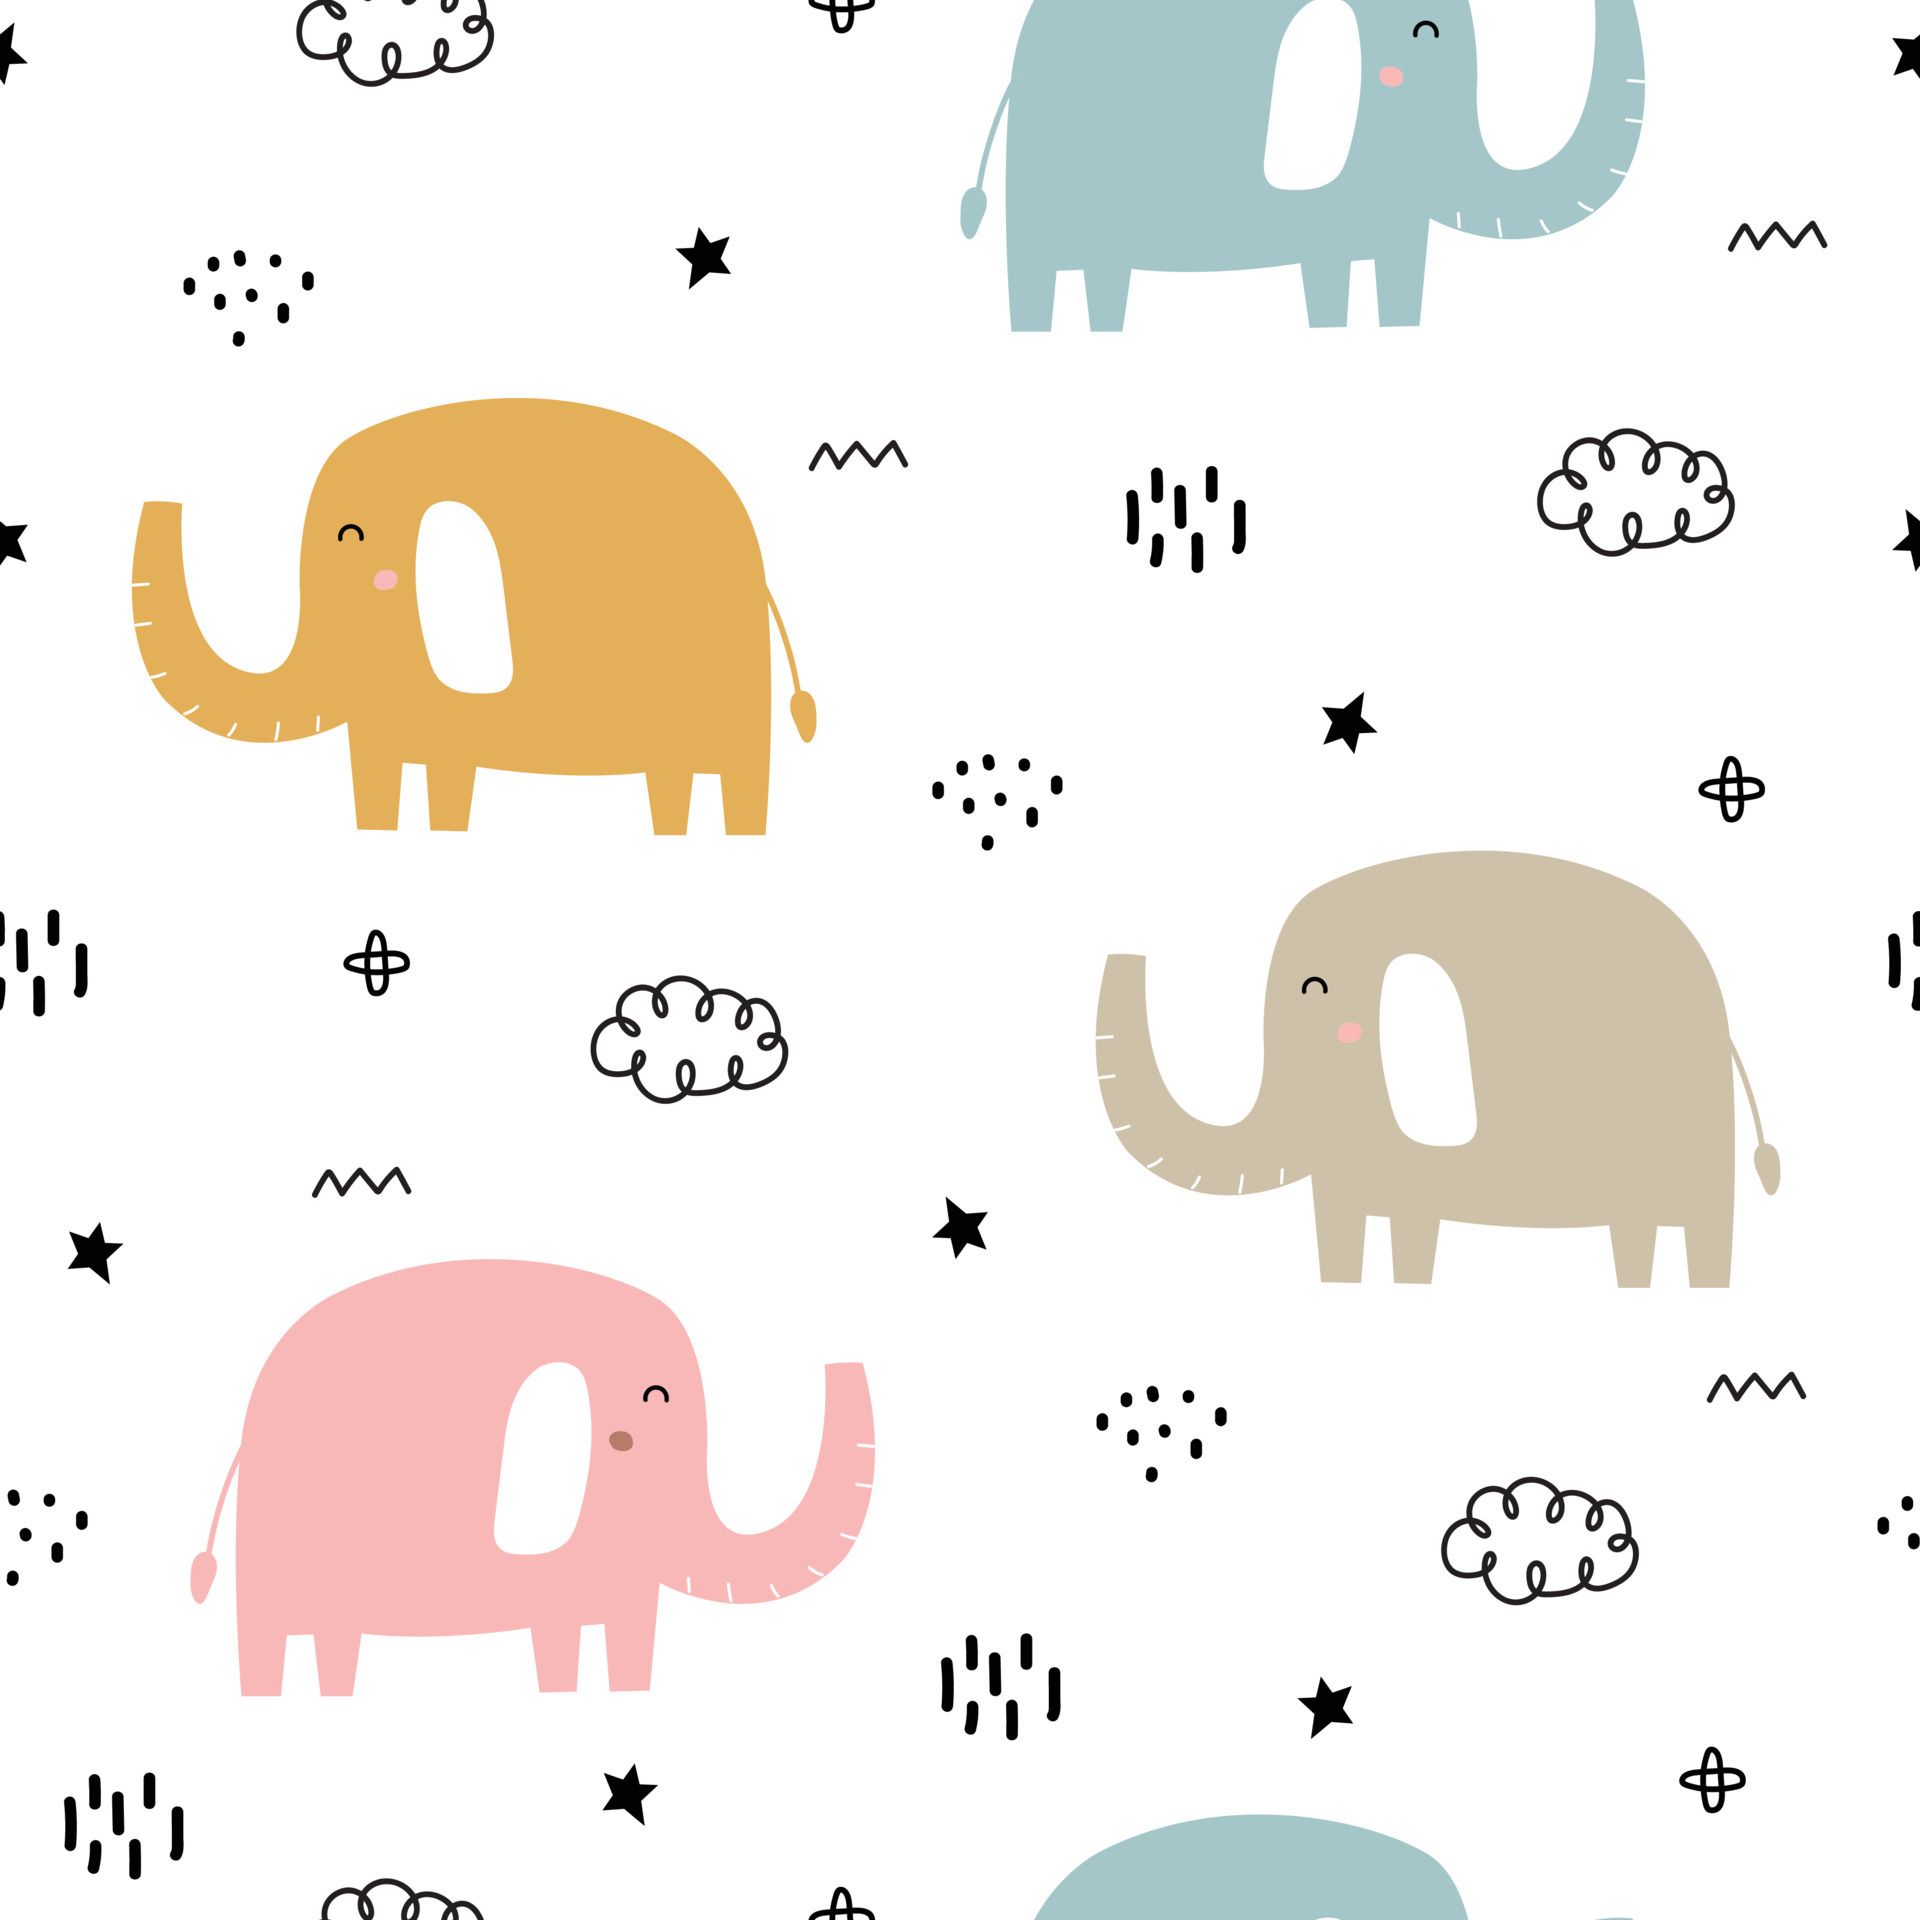 A pattern of four cartoon elephants - Elephant